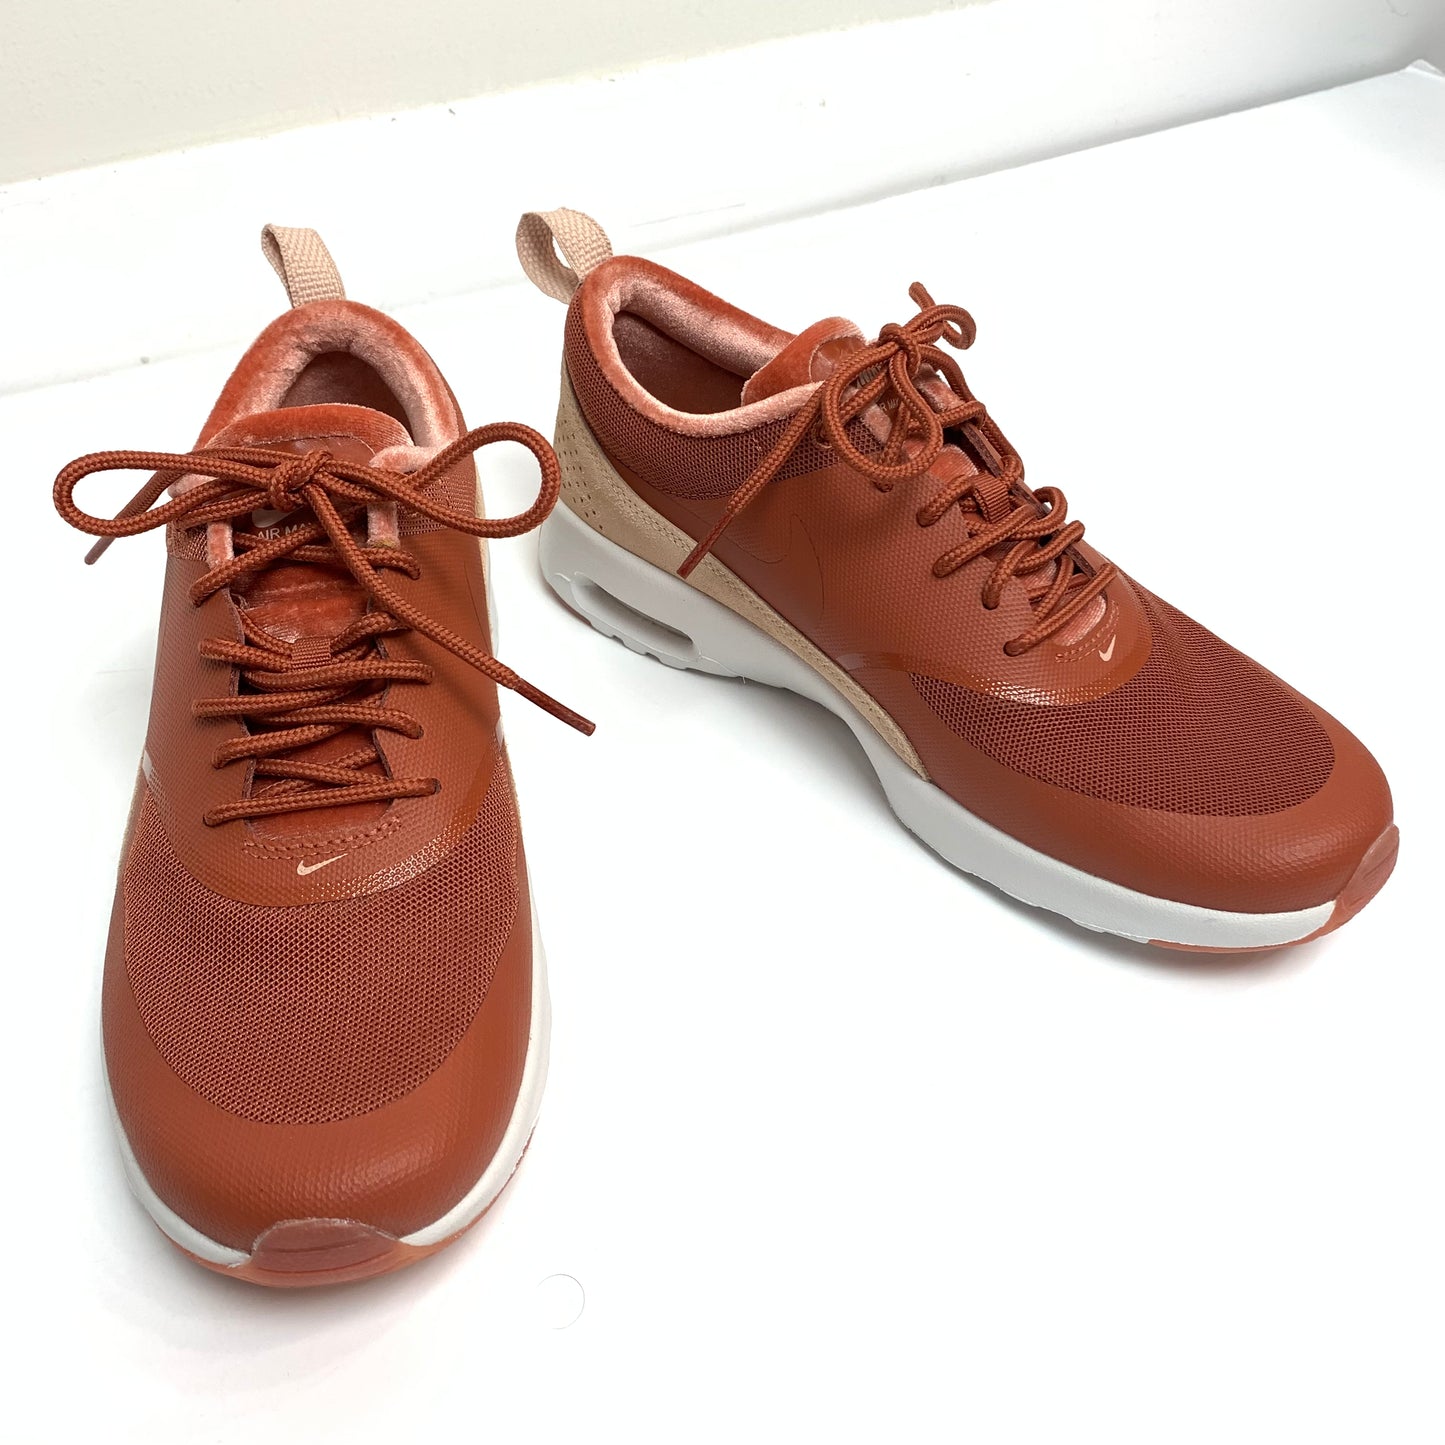 Nike Air Max Thea Dusty Peach Sneakers 7.5